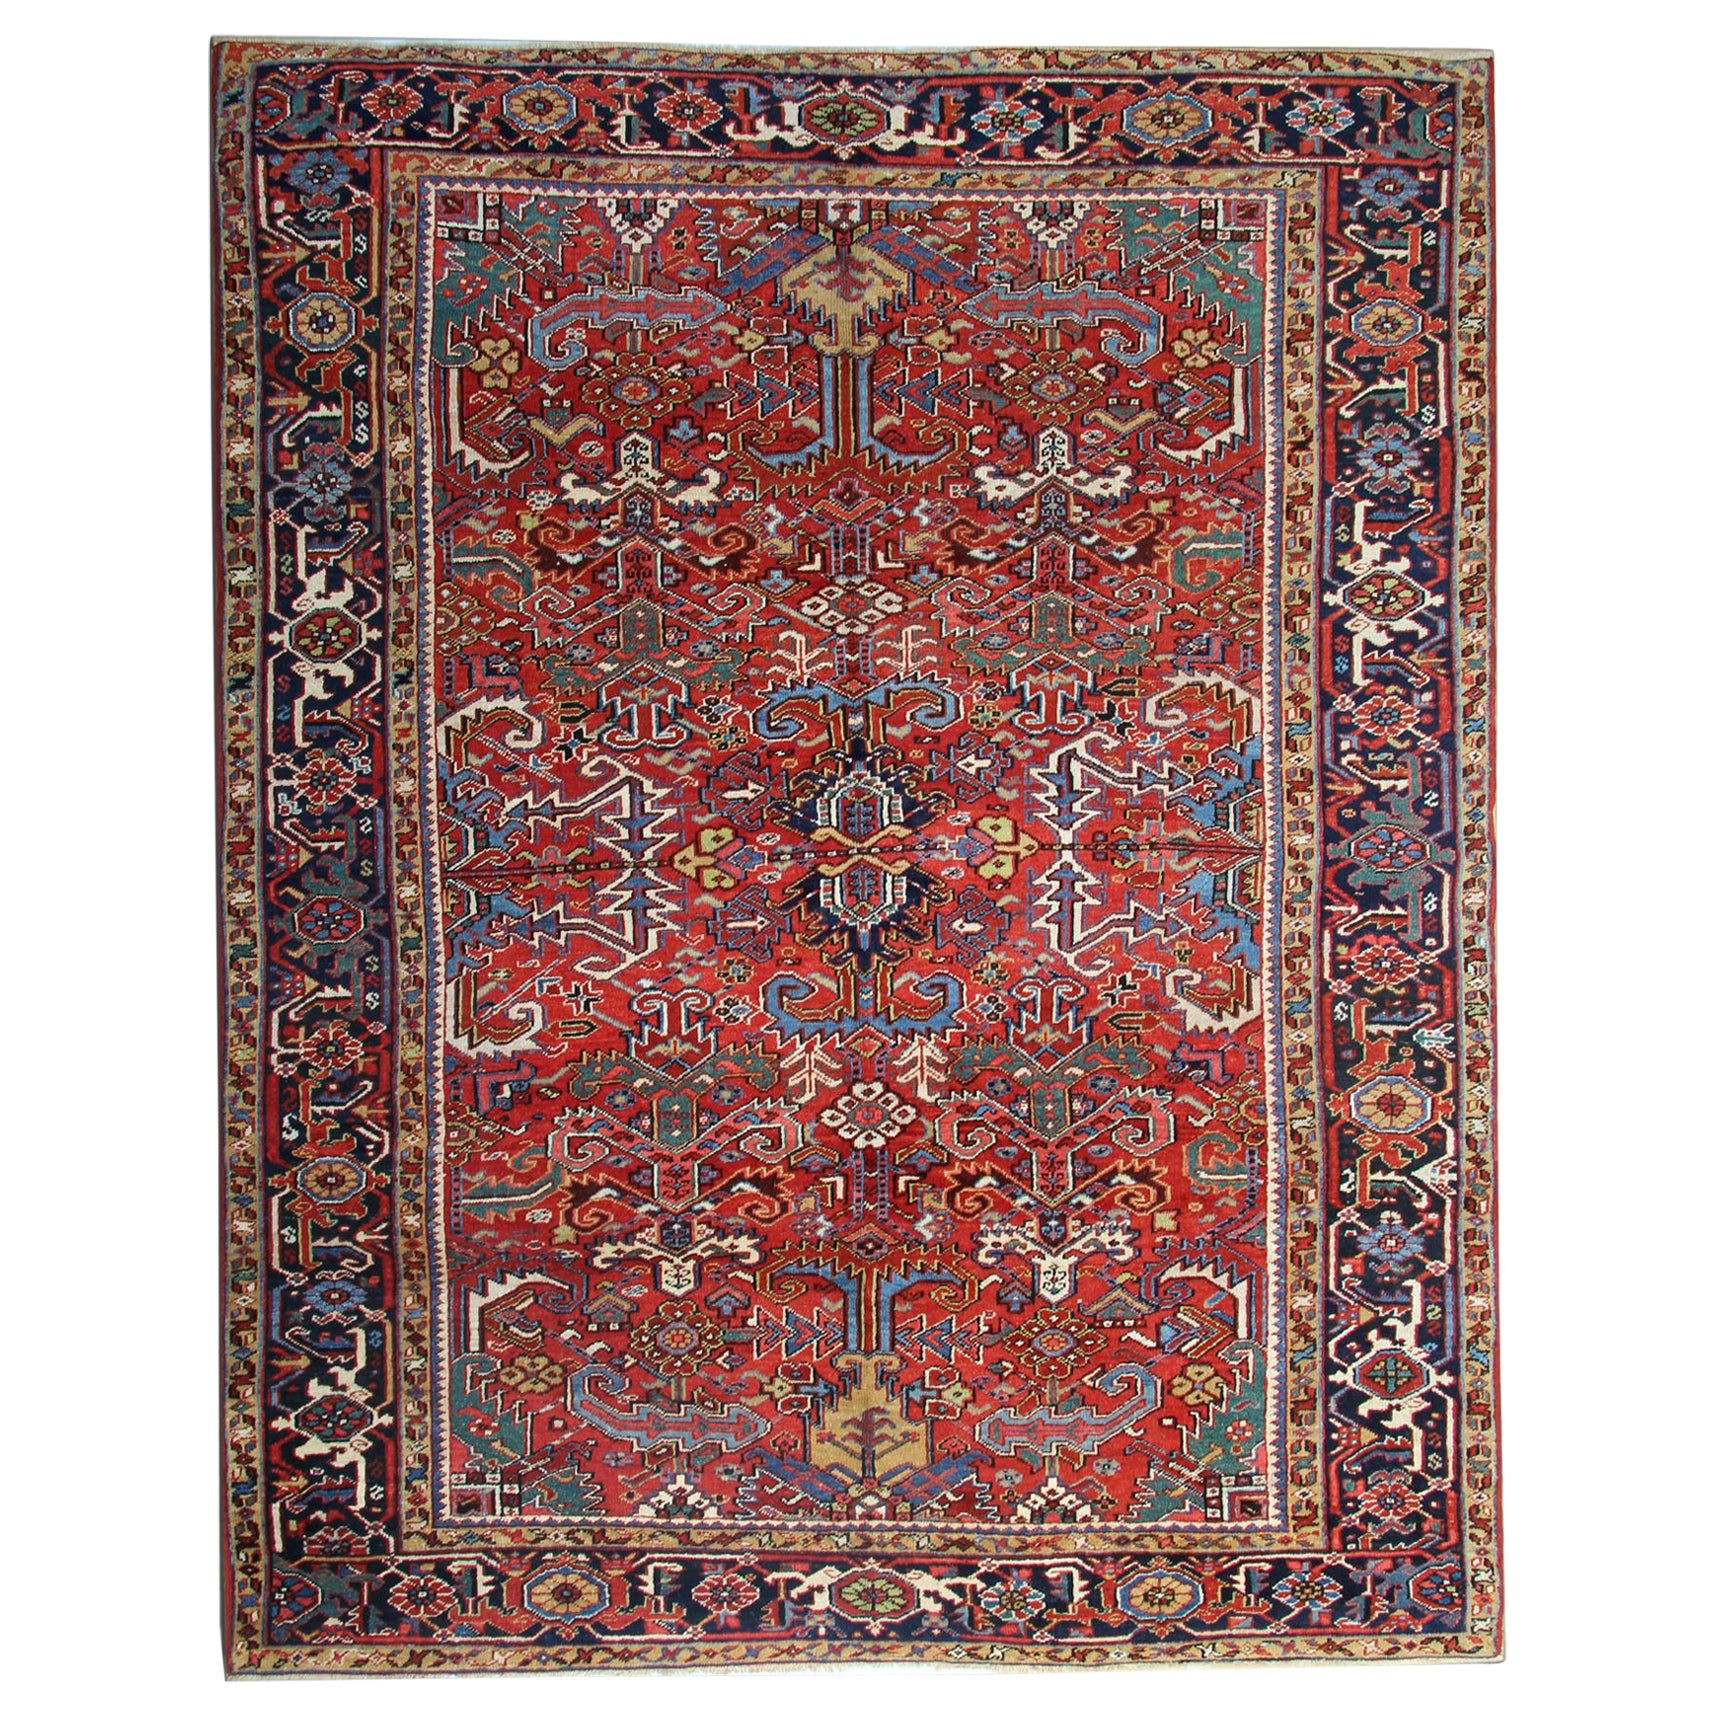 Handgewebter Teppich Rost Geometrischer Teppich Orientalischer Großer traditioneller Teppich